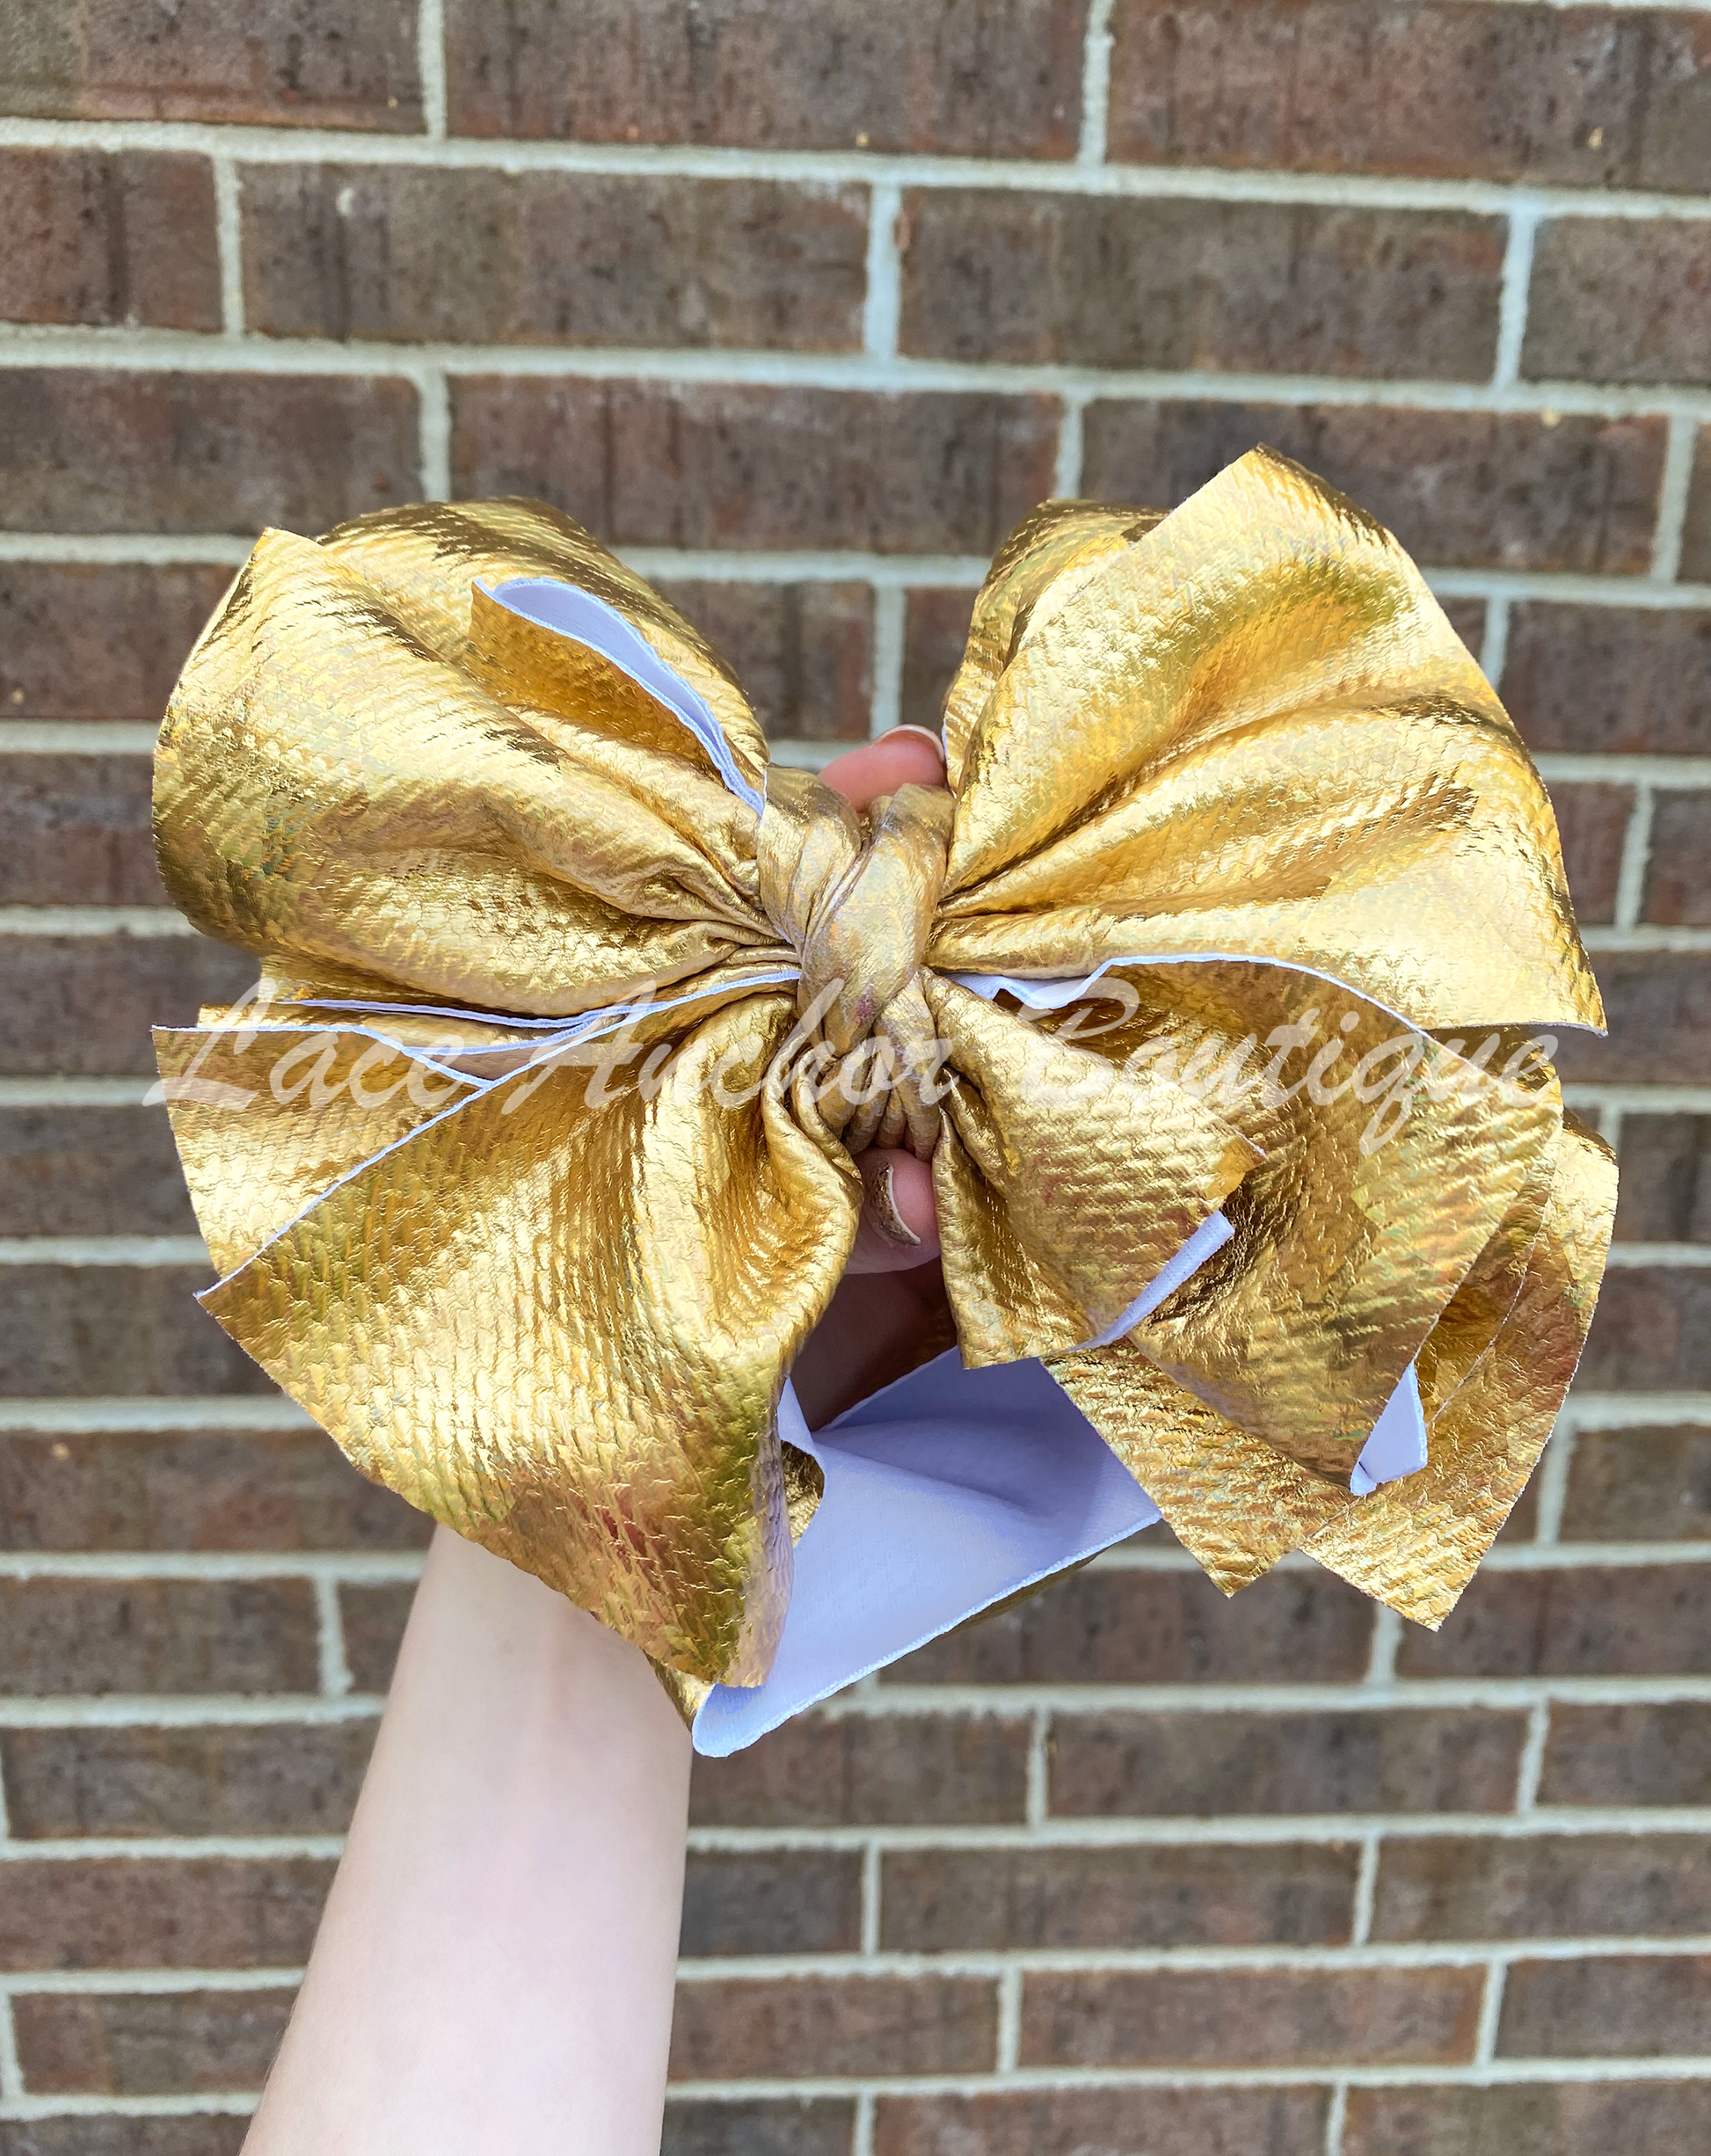 Golden Toddler Pleather Mega Bow Wraps - Baby Gold Metallic Textured Jumbo Hair Wrap